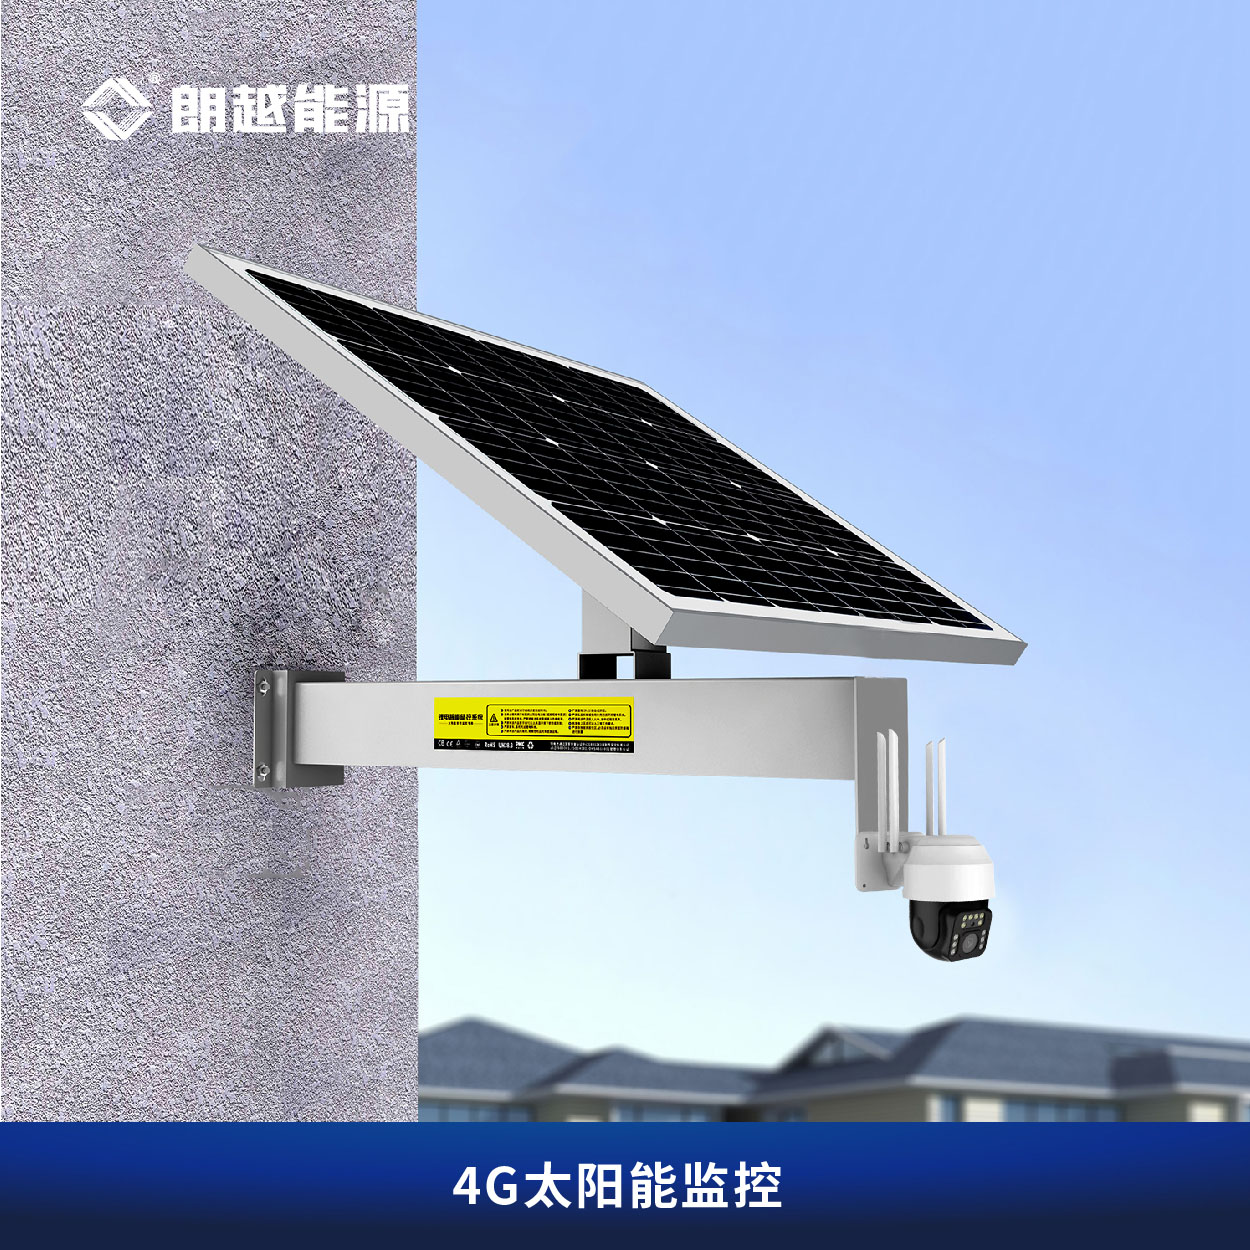 朗越太阳能监控供电系统远程4G